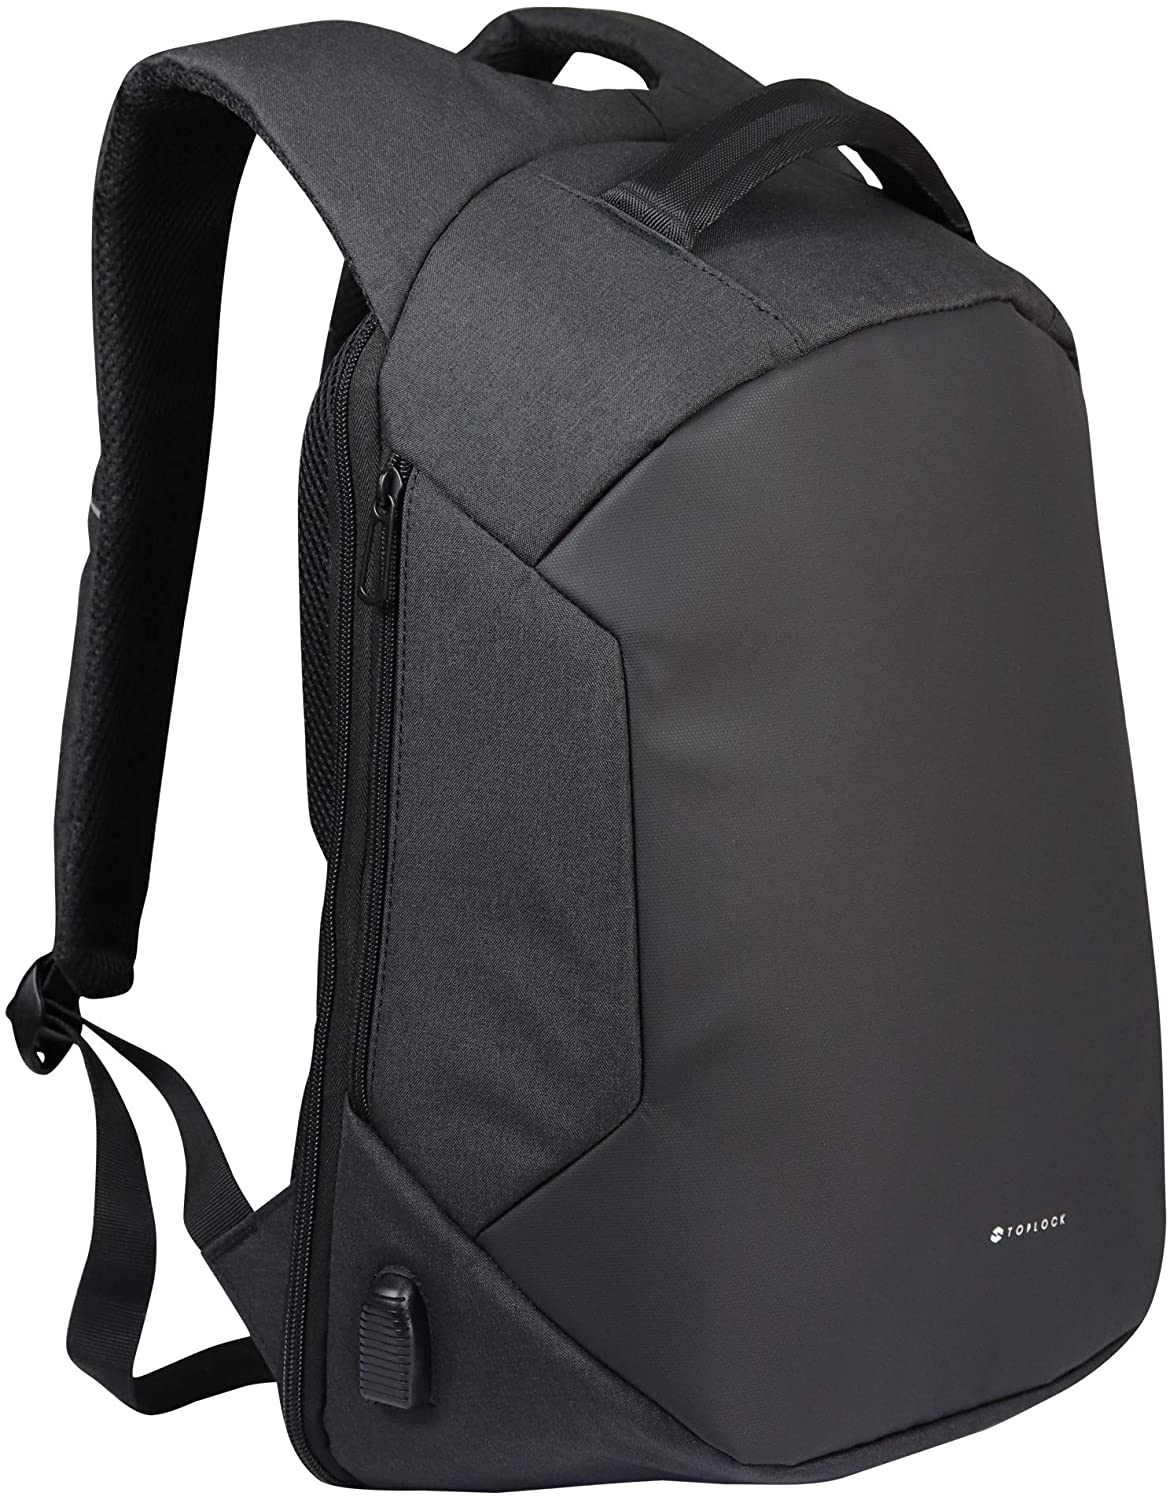 Mochila Antirrobo Nomad Backpack Amazon